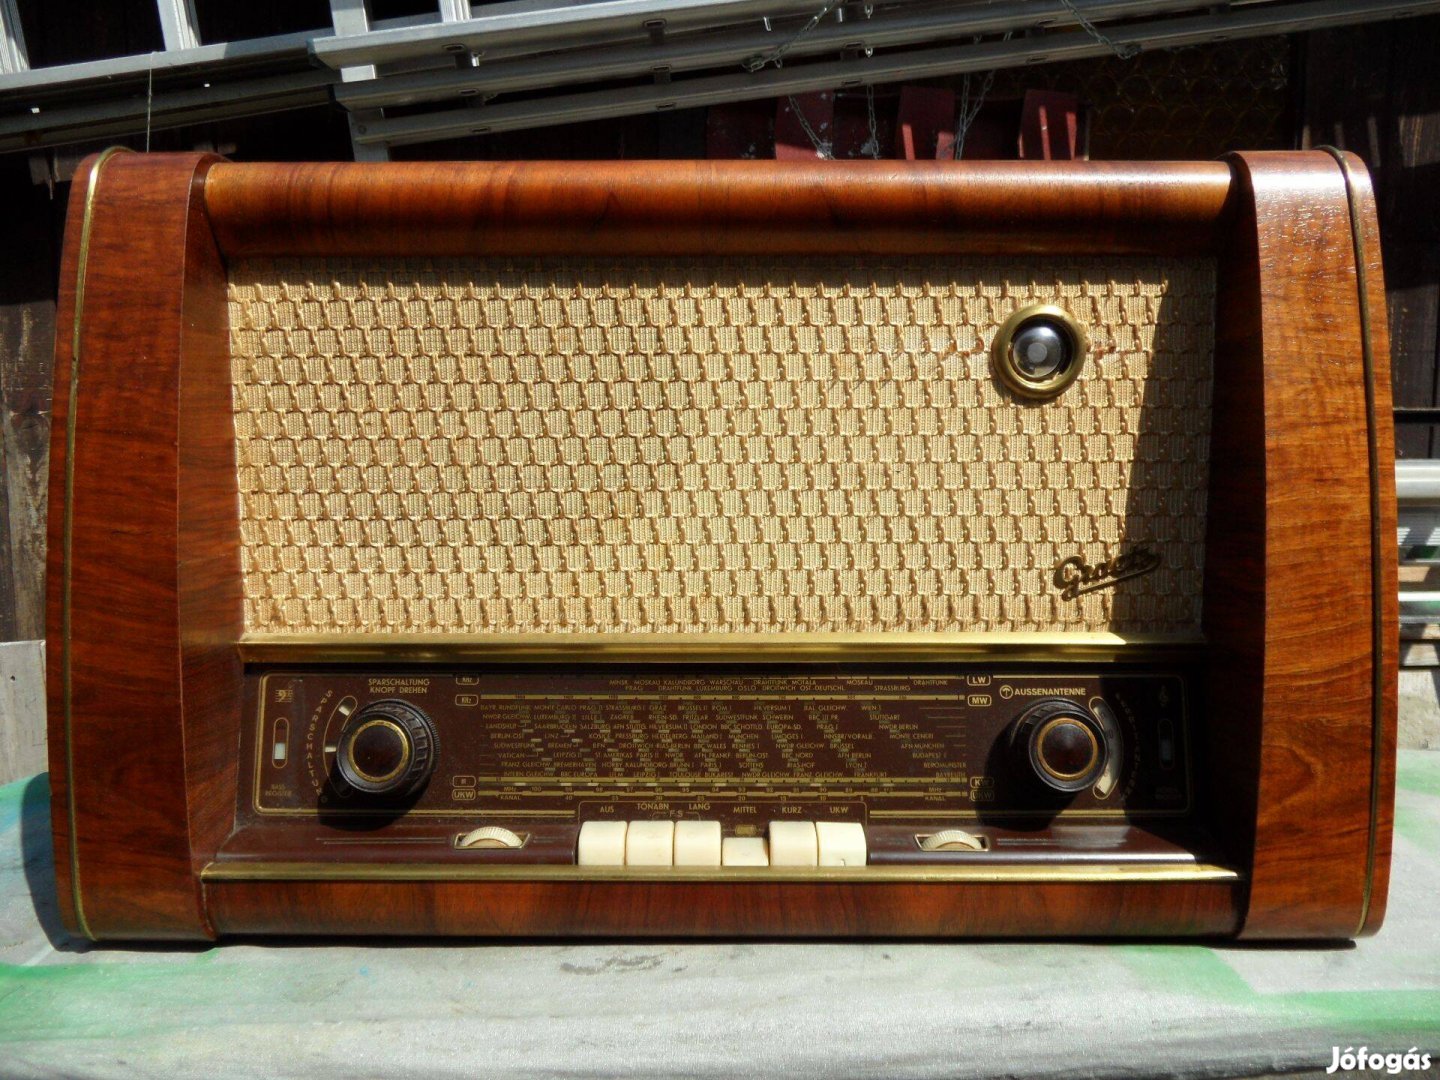 Eladó Graetz elektroncsöves rádió